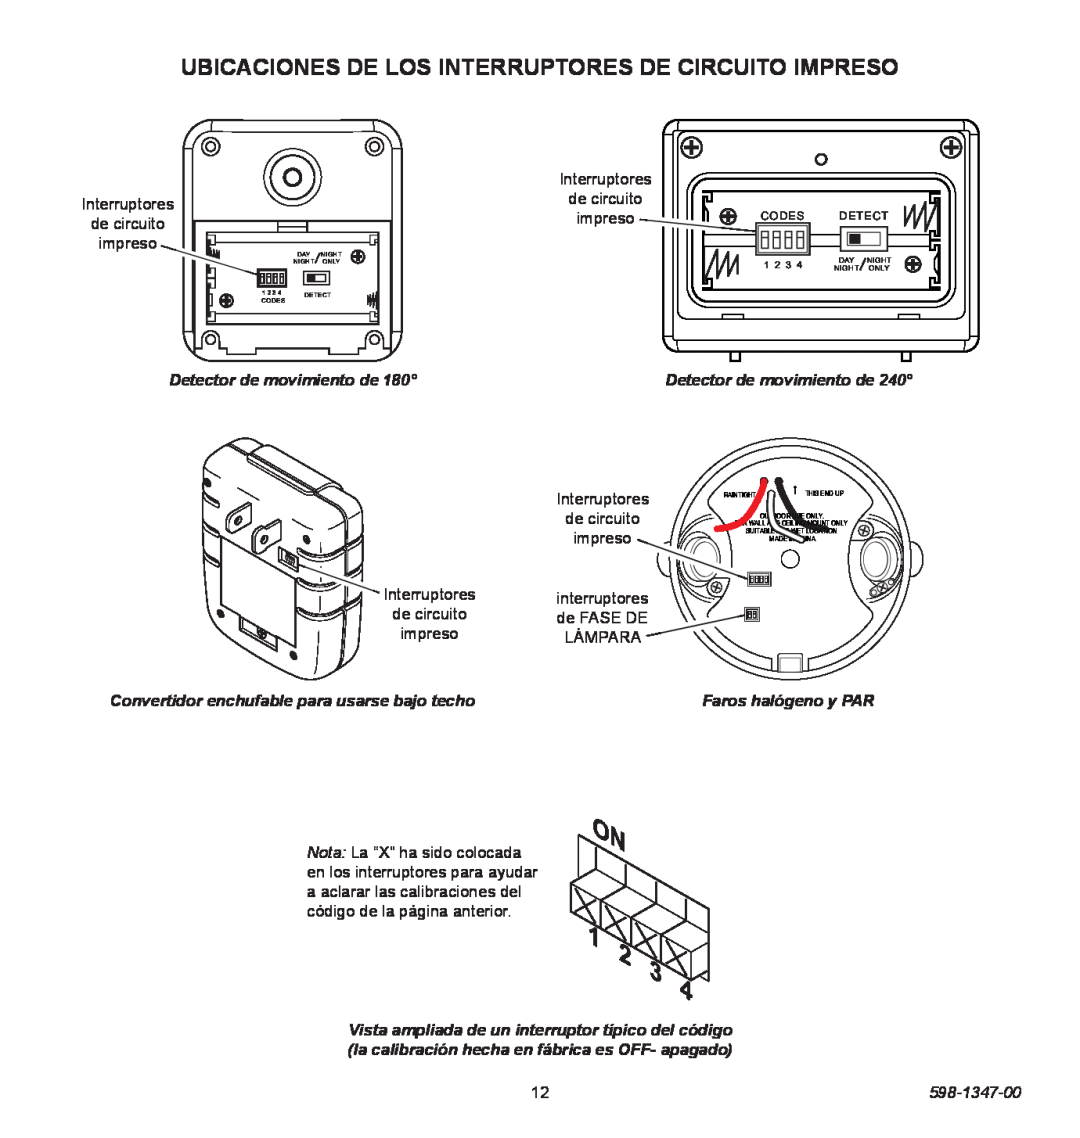 Heath Zenith 598-1347-00 Detector de movimiento de, Convertidor enchufable para usarse bajo techo, Faros halógeno y PAR 